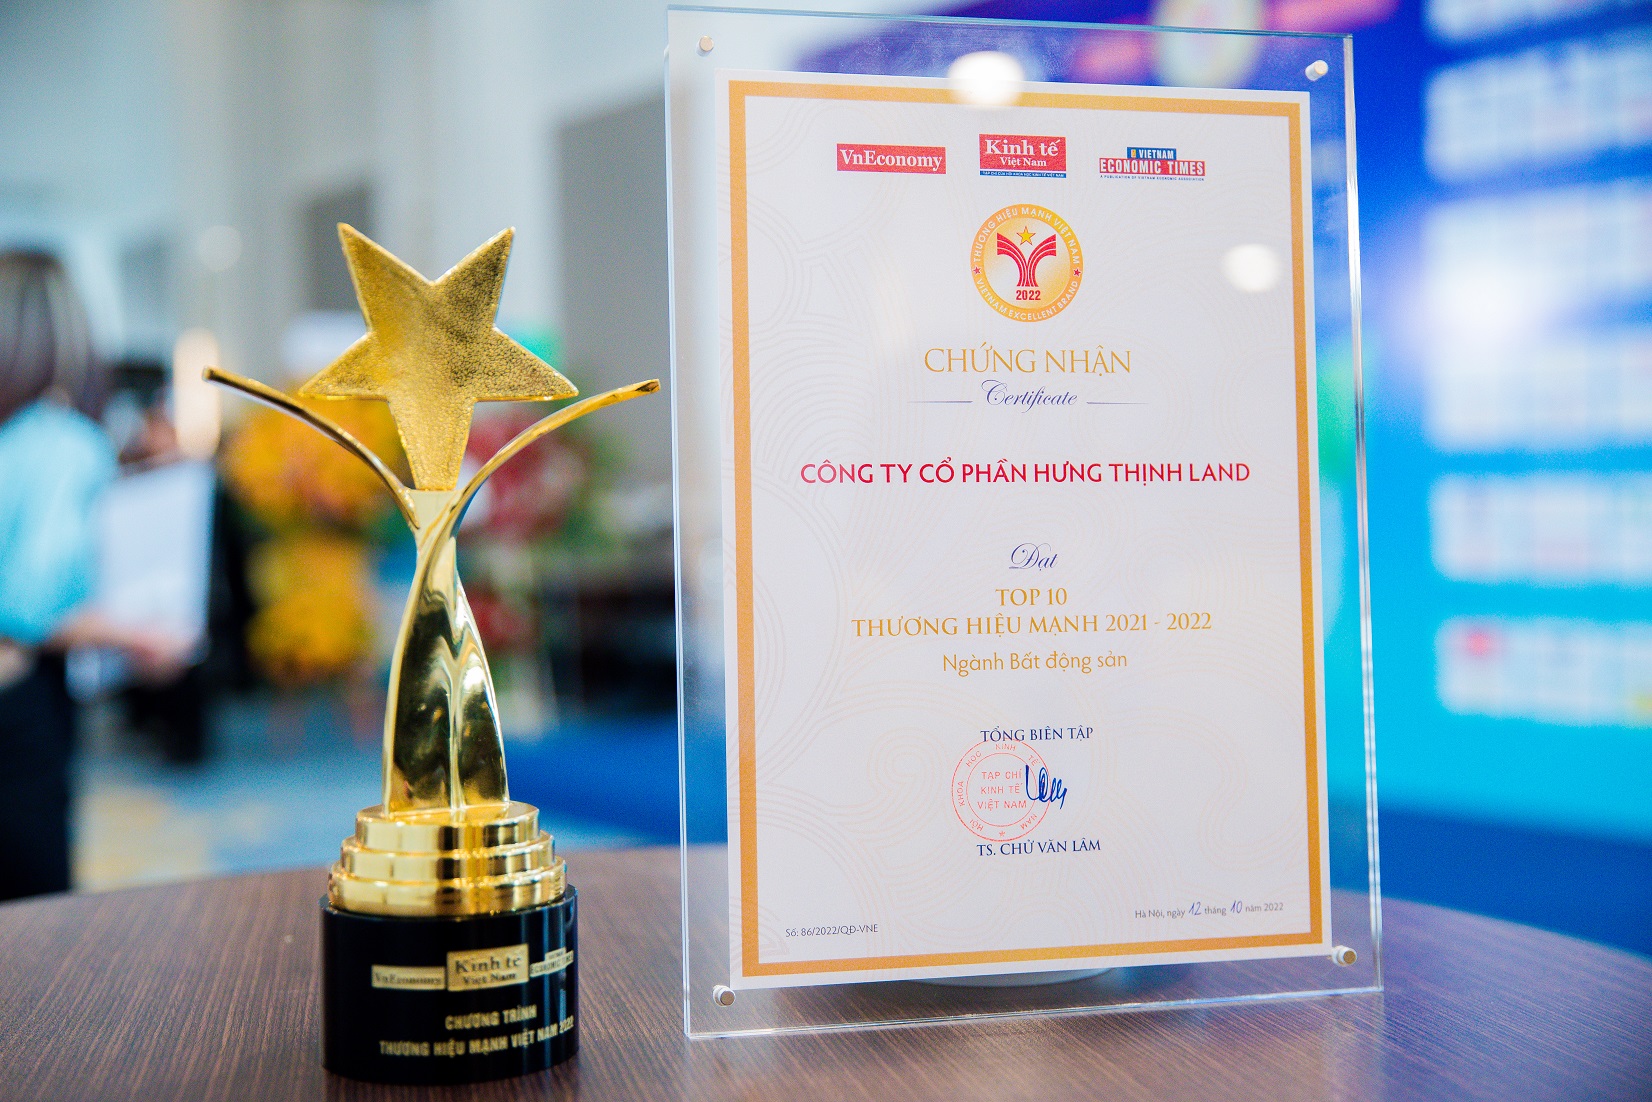 Đây là năm thứ 2 liên tiếp Hưng Thịnh Land được vinh danh tại giải thưởng “Thương hiệu mạnh Việt Nam”